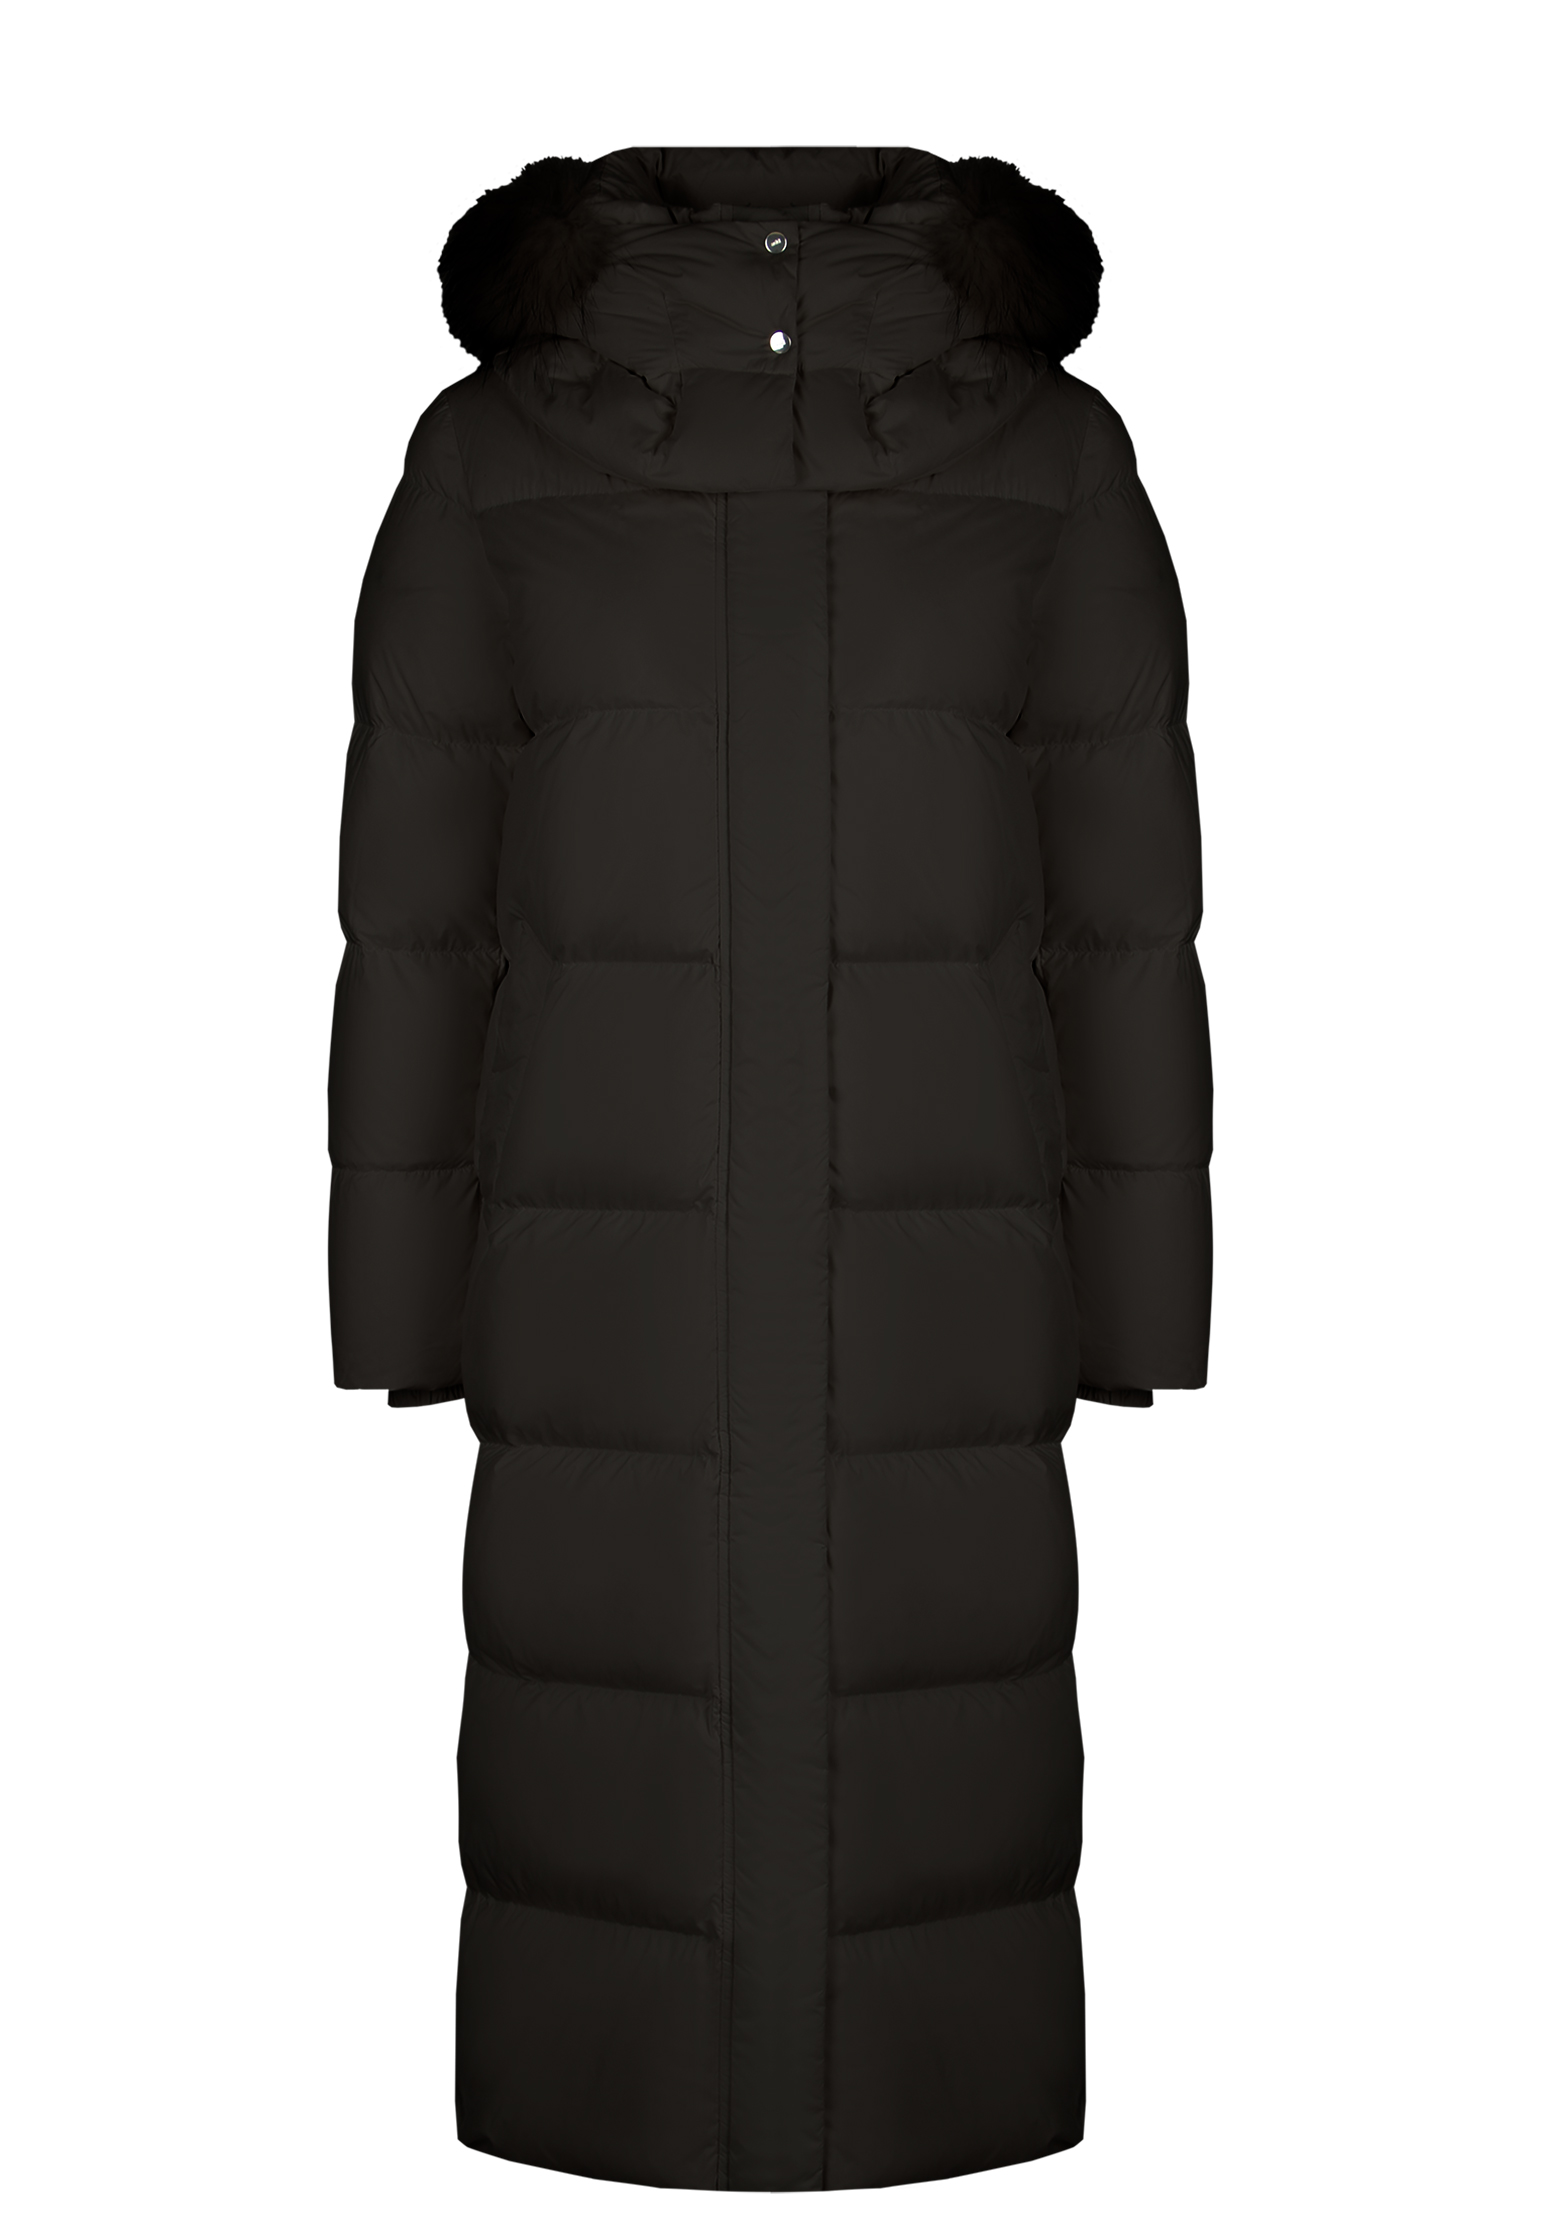 Пальто женское add 144970 черное 42